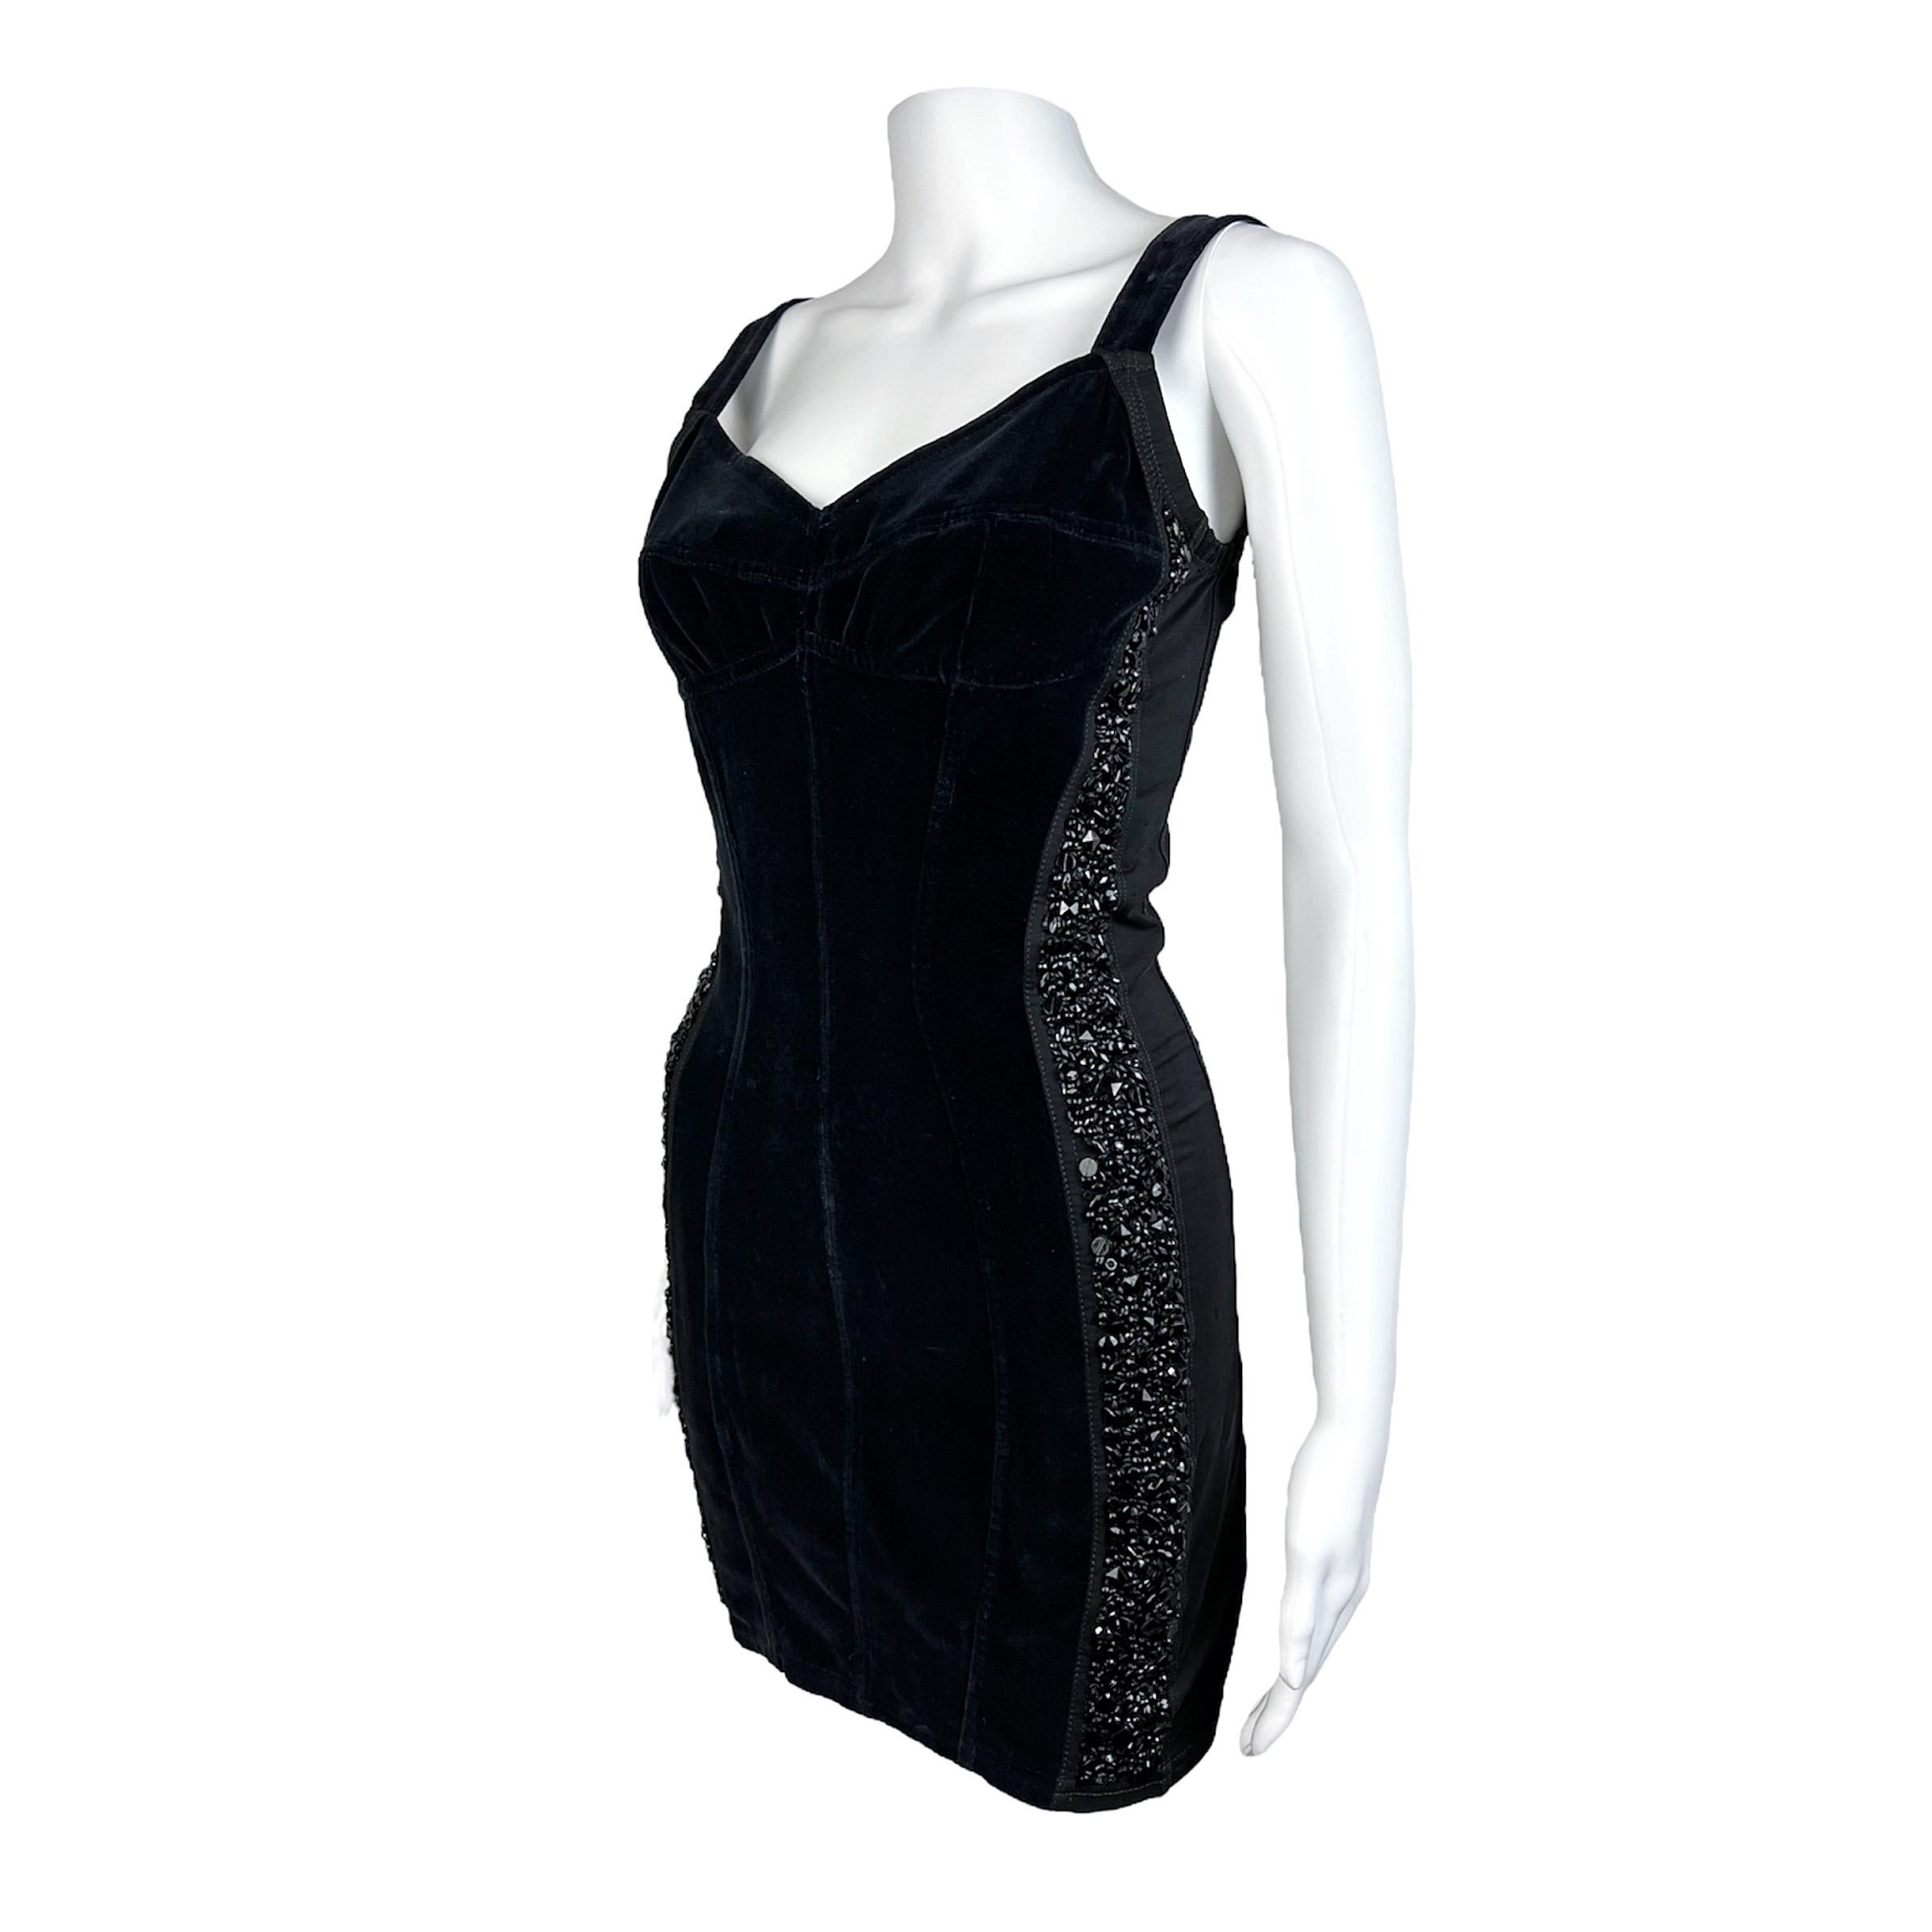 Super süßes schwarzes Minikleid von Dolce & Gabbana aus den frühen 90ern mit Kristalleinsätzen an beiden Seiten. Das Kleid ist aus einem schönen Samt und dehnbaren Einsätzen gefertigt. Die Form ist körperbetont und ist direkt von Dessous und